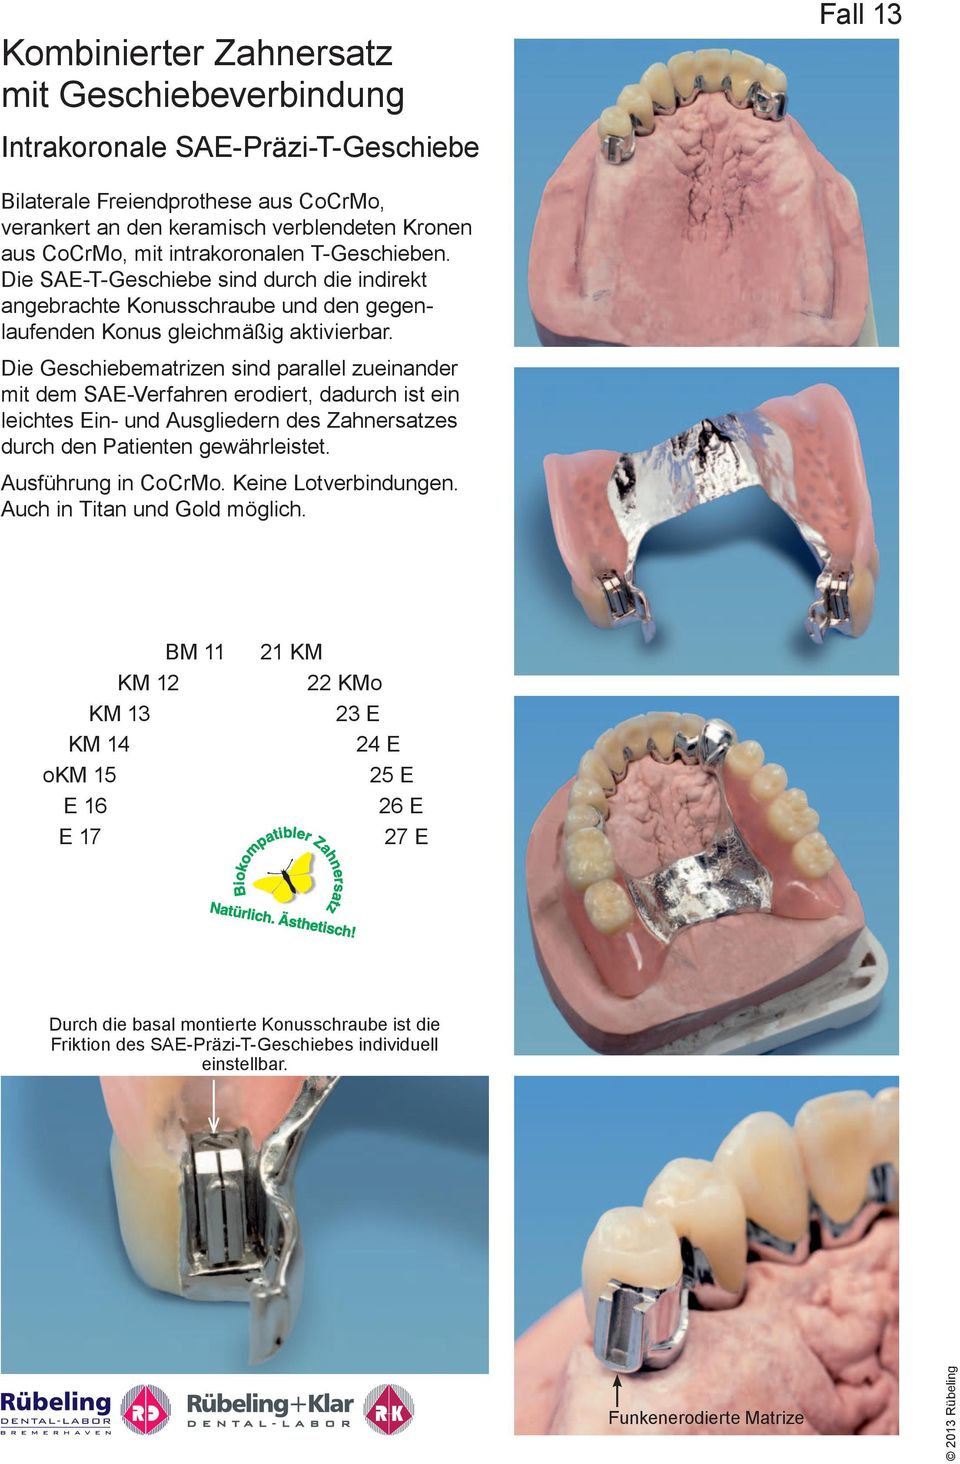 Die Geschiebematrizen sind parallel zueinander mit dem SA-Verfahren erodiert, dadurch ist ein leichtes in- und Ausgliedern des Zahnersatzes durch den Patienten gewährleistet. Ausführung in CoCrMo.